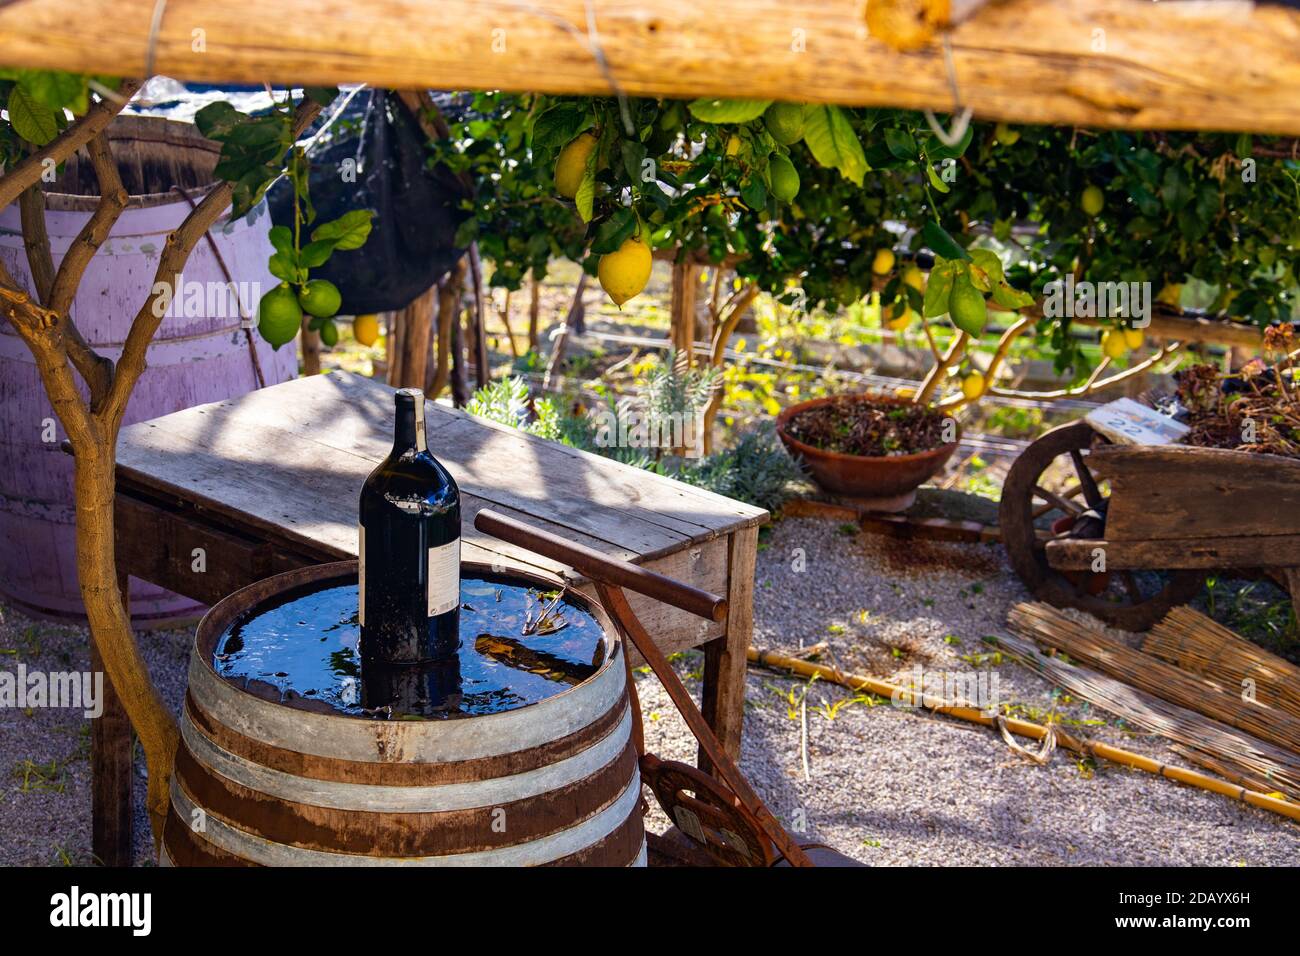 Wine and lemons, Ravello, Province of Salerno, Amalfi Coast, Italy Stock Photo